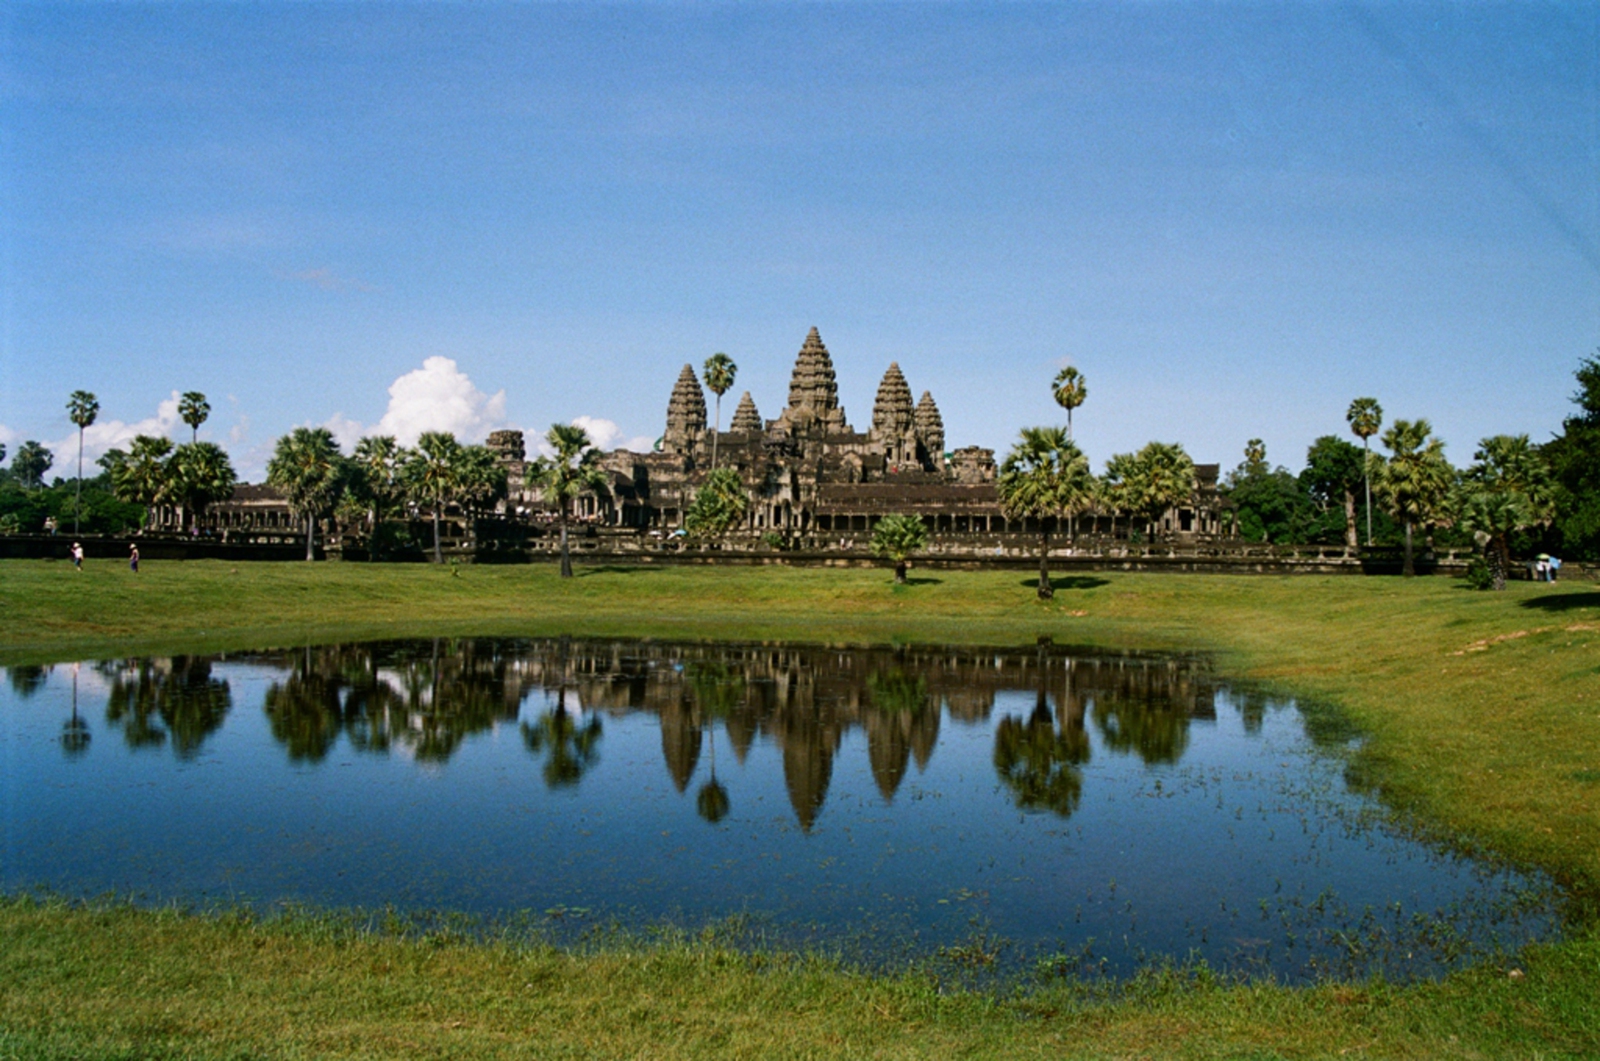 Angkor: Angkor Wat